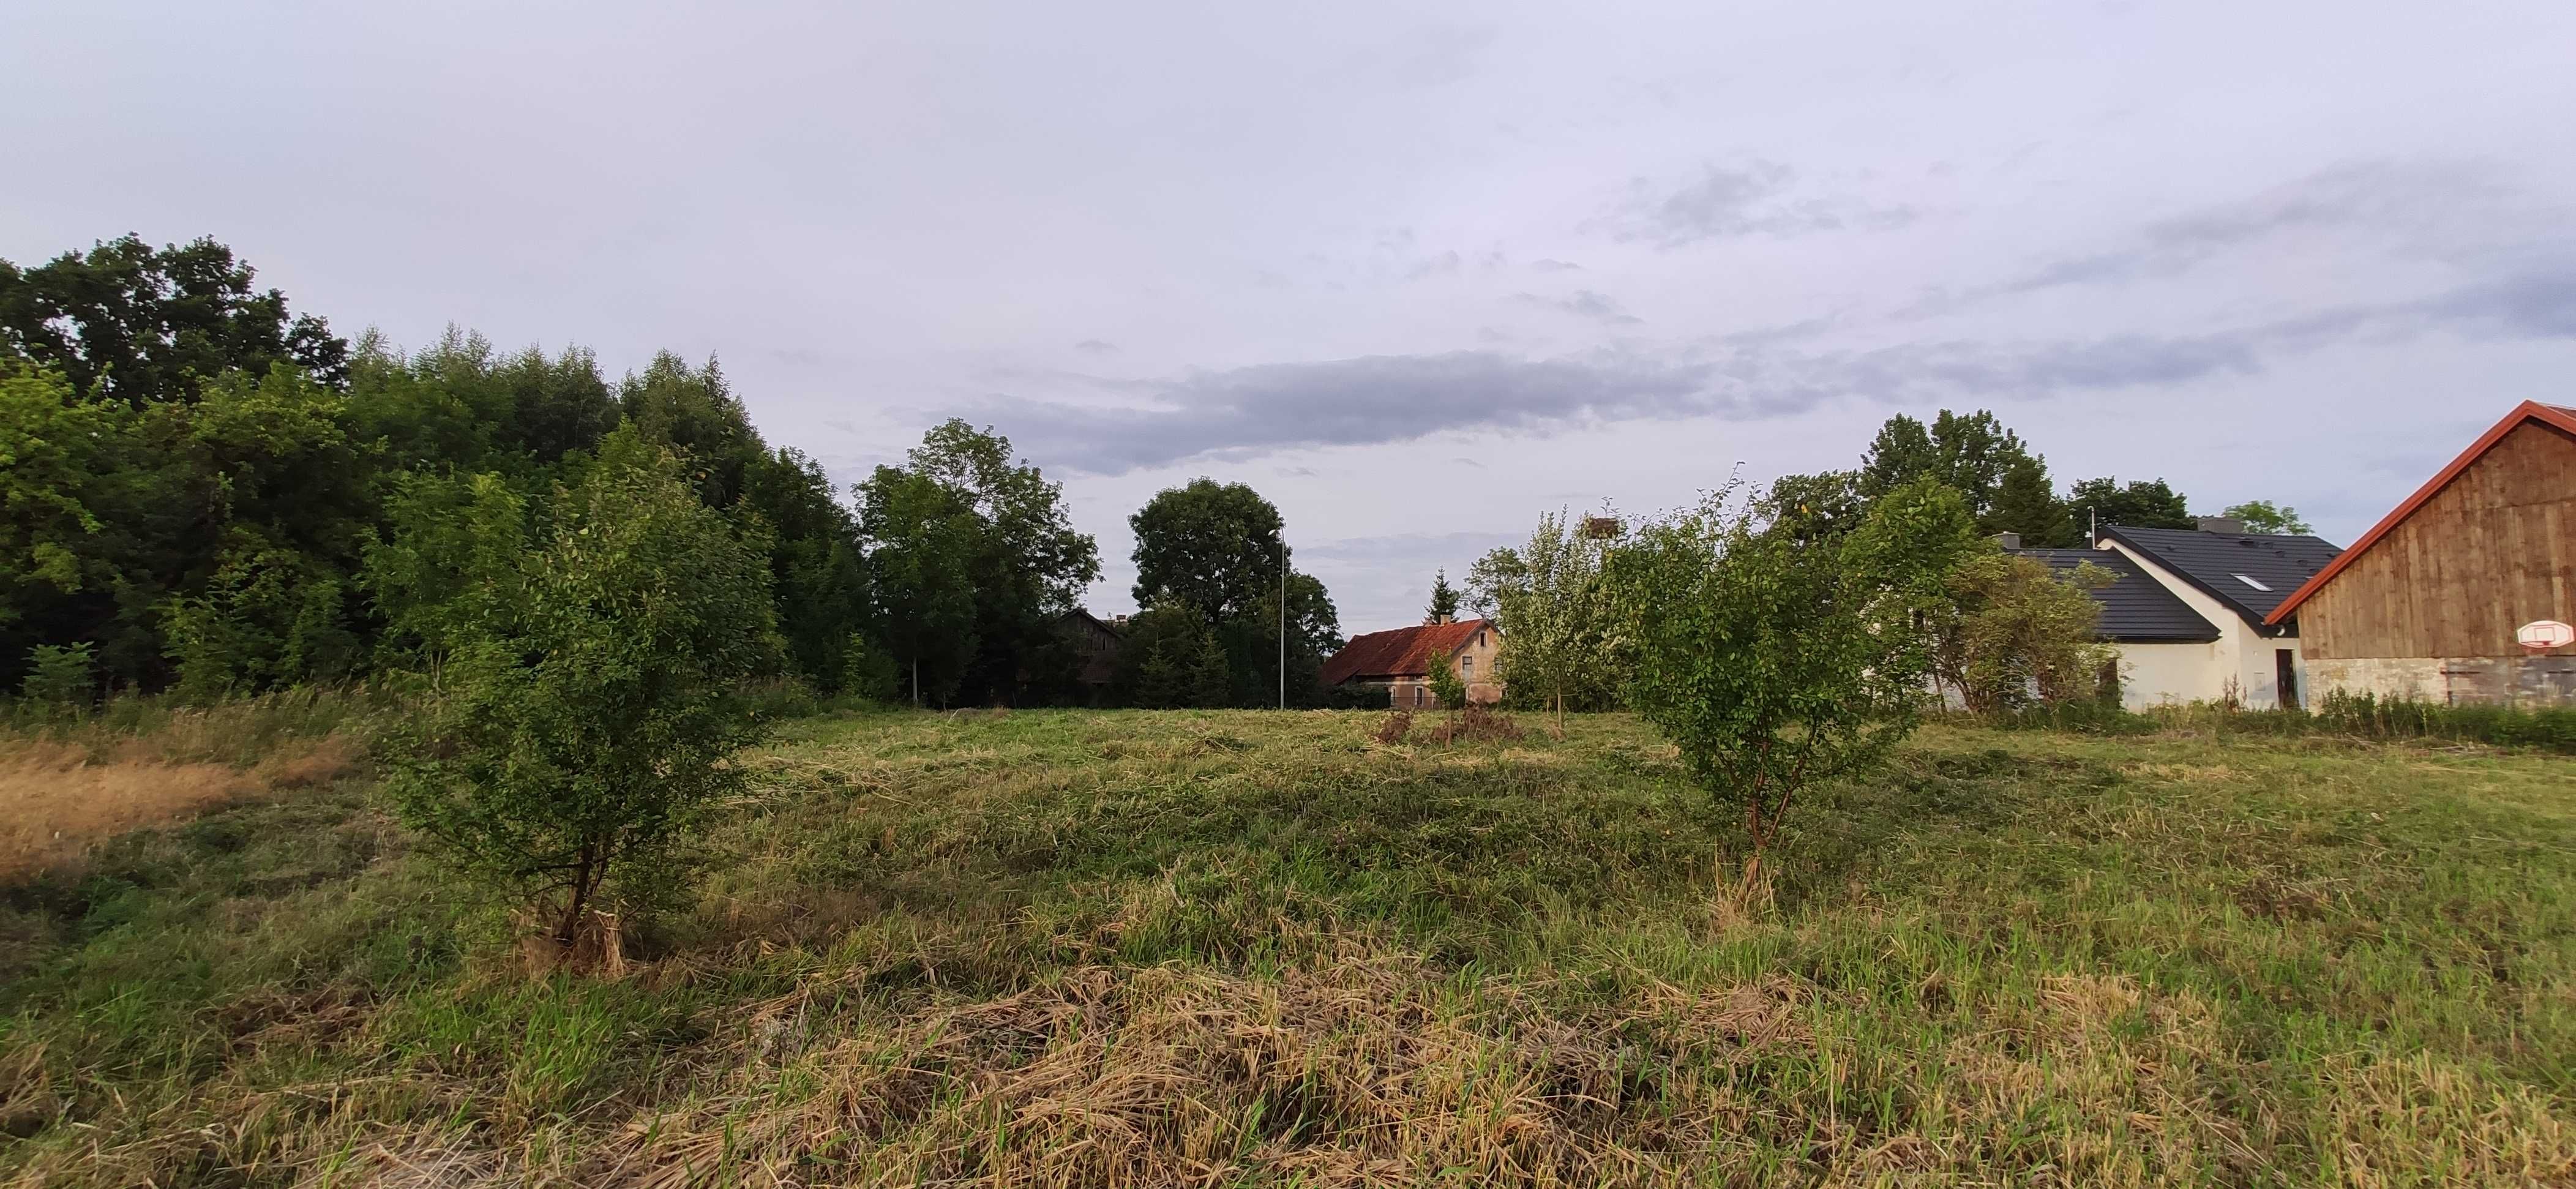 #Działka 0,20 ha, idealna pod budowę domu, okolice Lidzbarka Warmiń.#